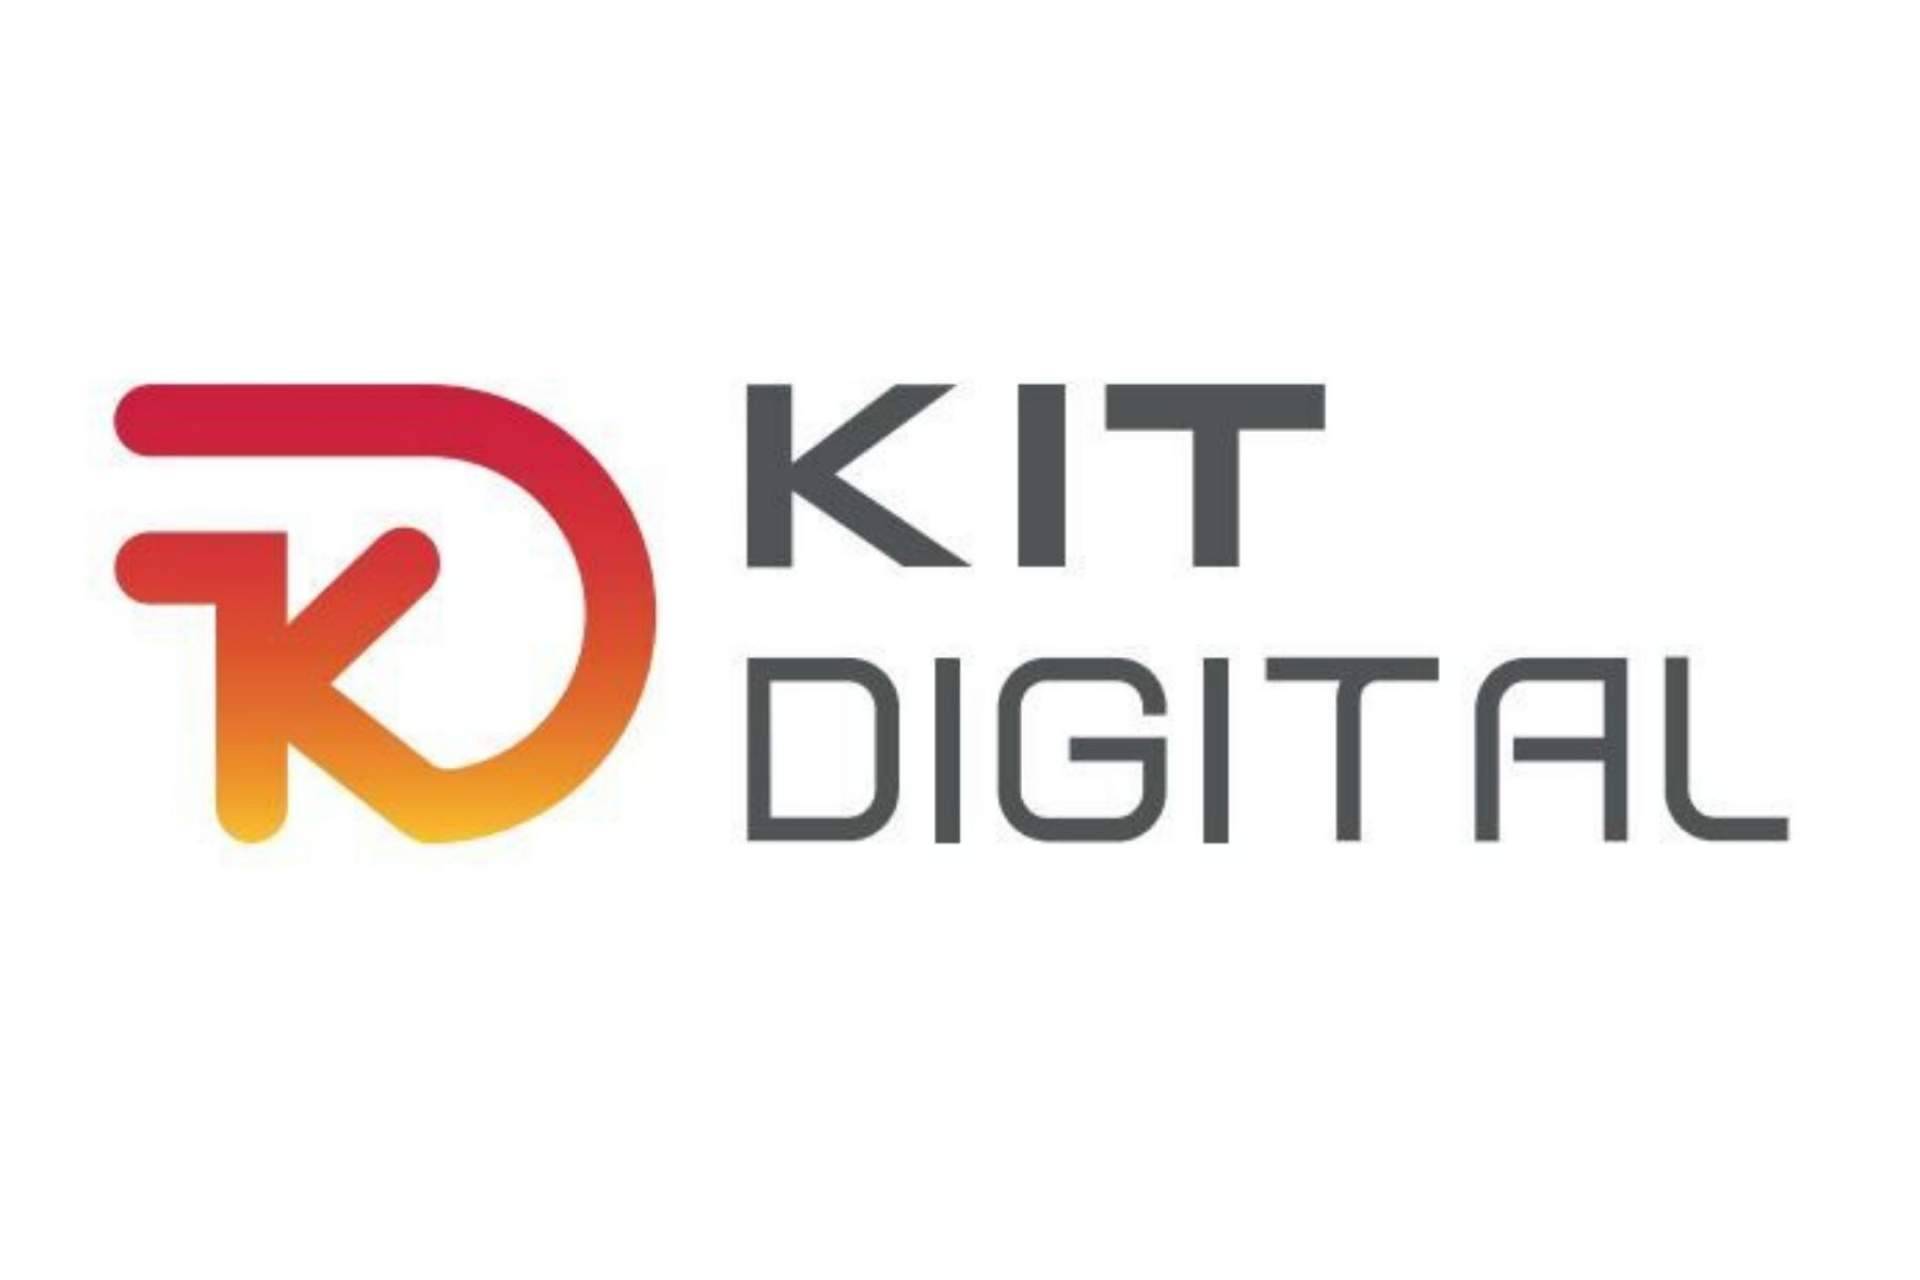 Prot Comunicación es agente digitalizador para ayudar a pymes en el proceso de digitalización mediante el Kit Digital